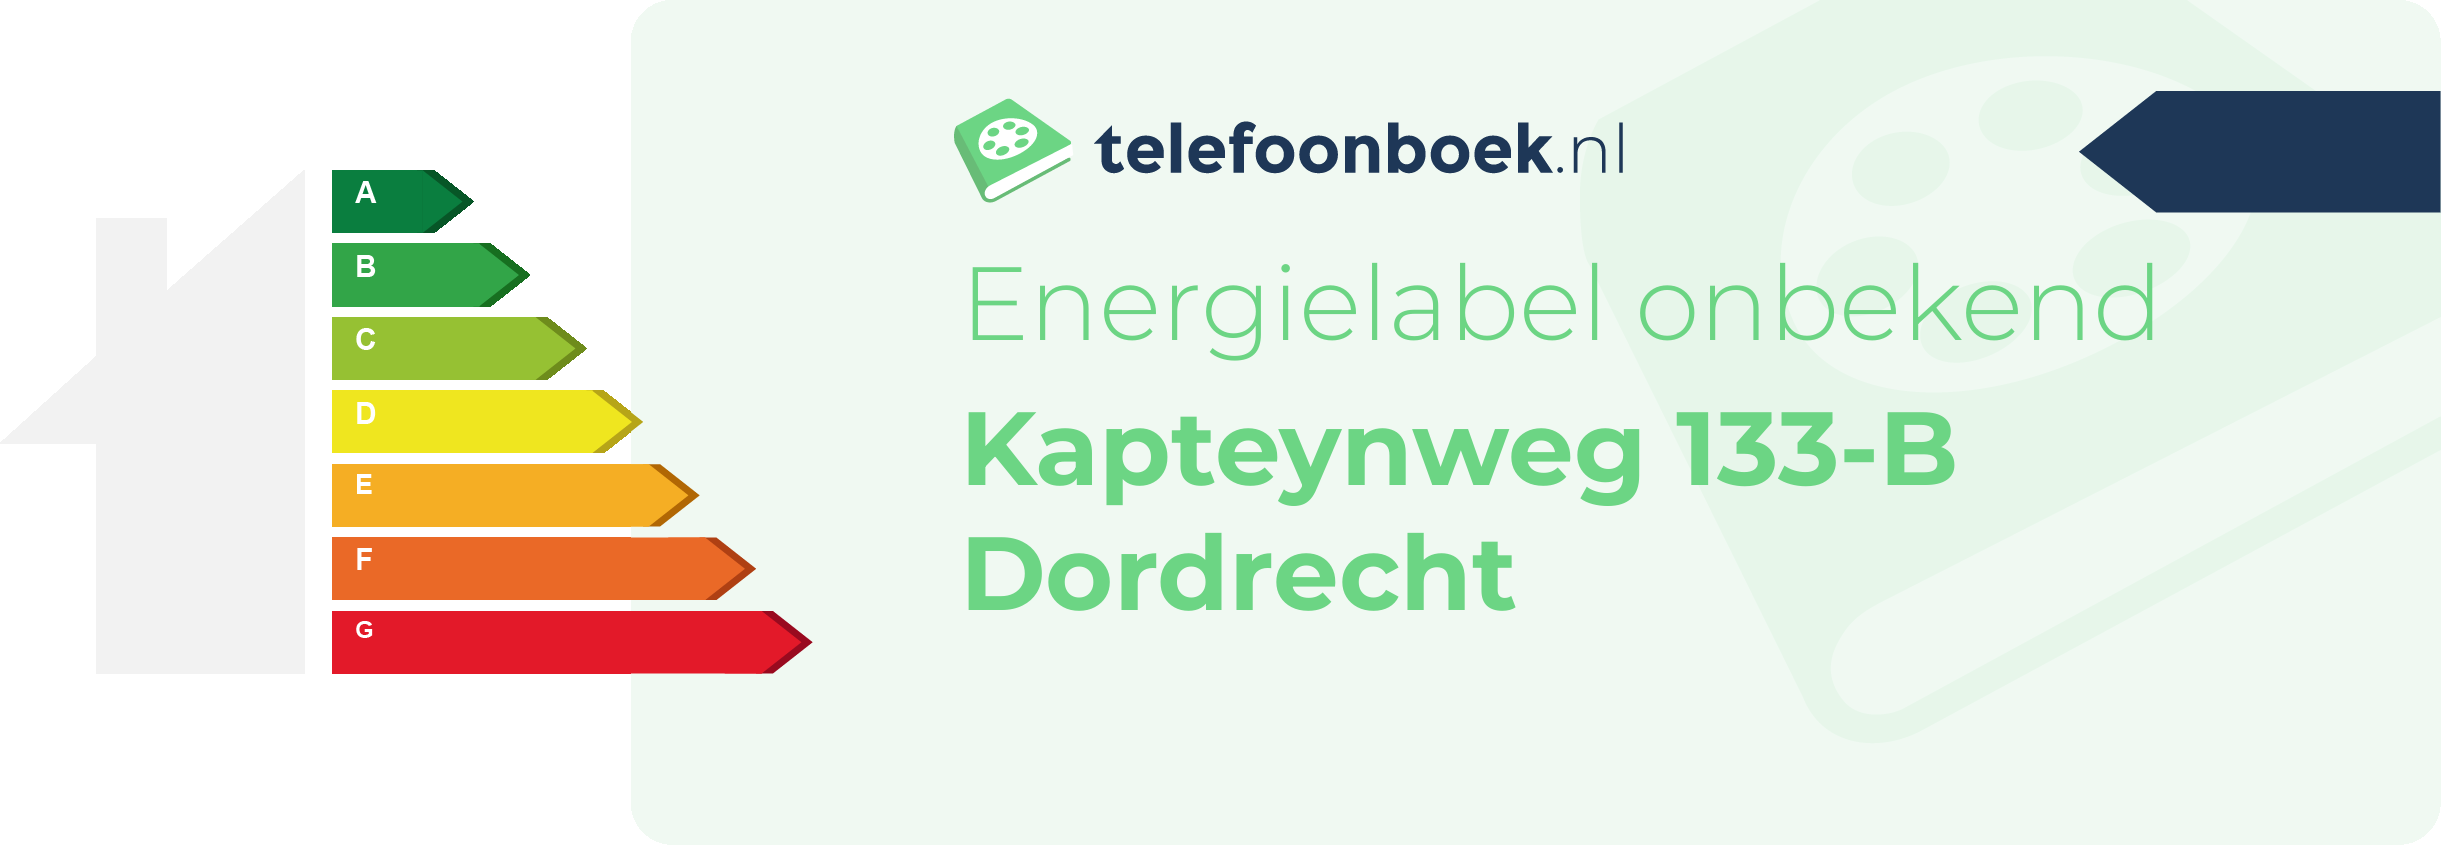 Energielabel Kapteynweg 133-B Dordrecht